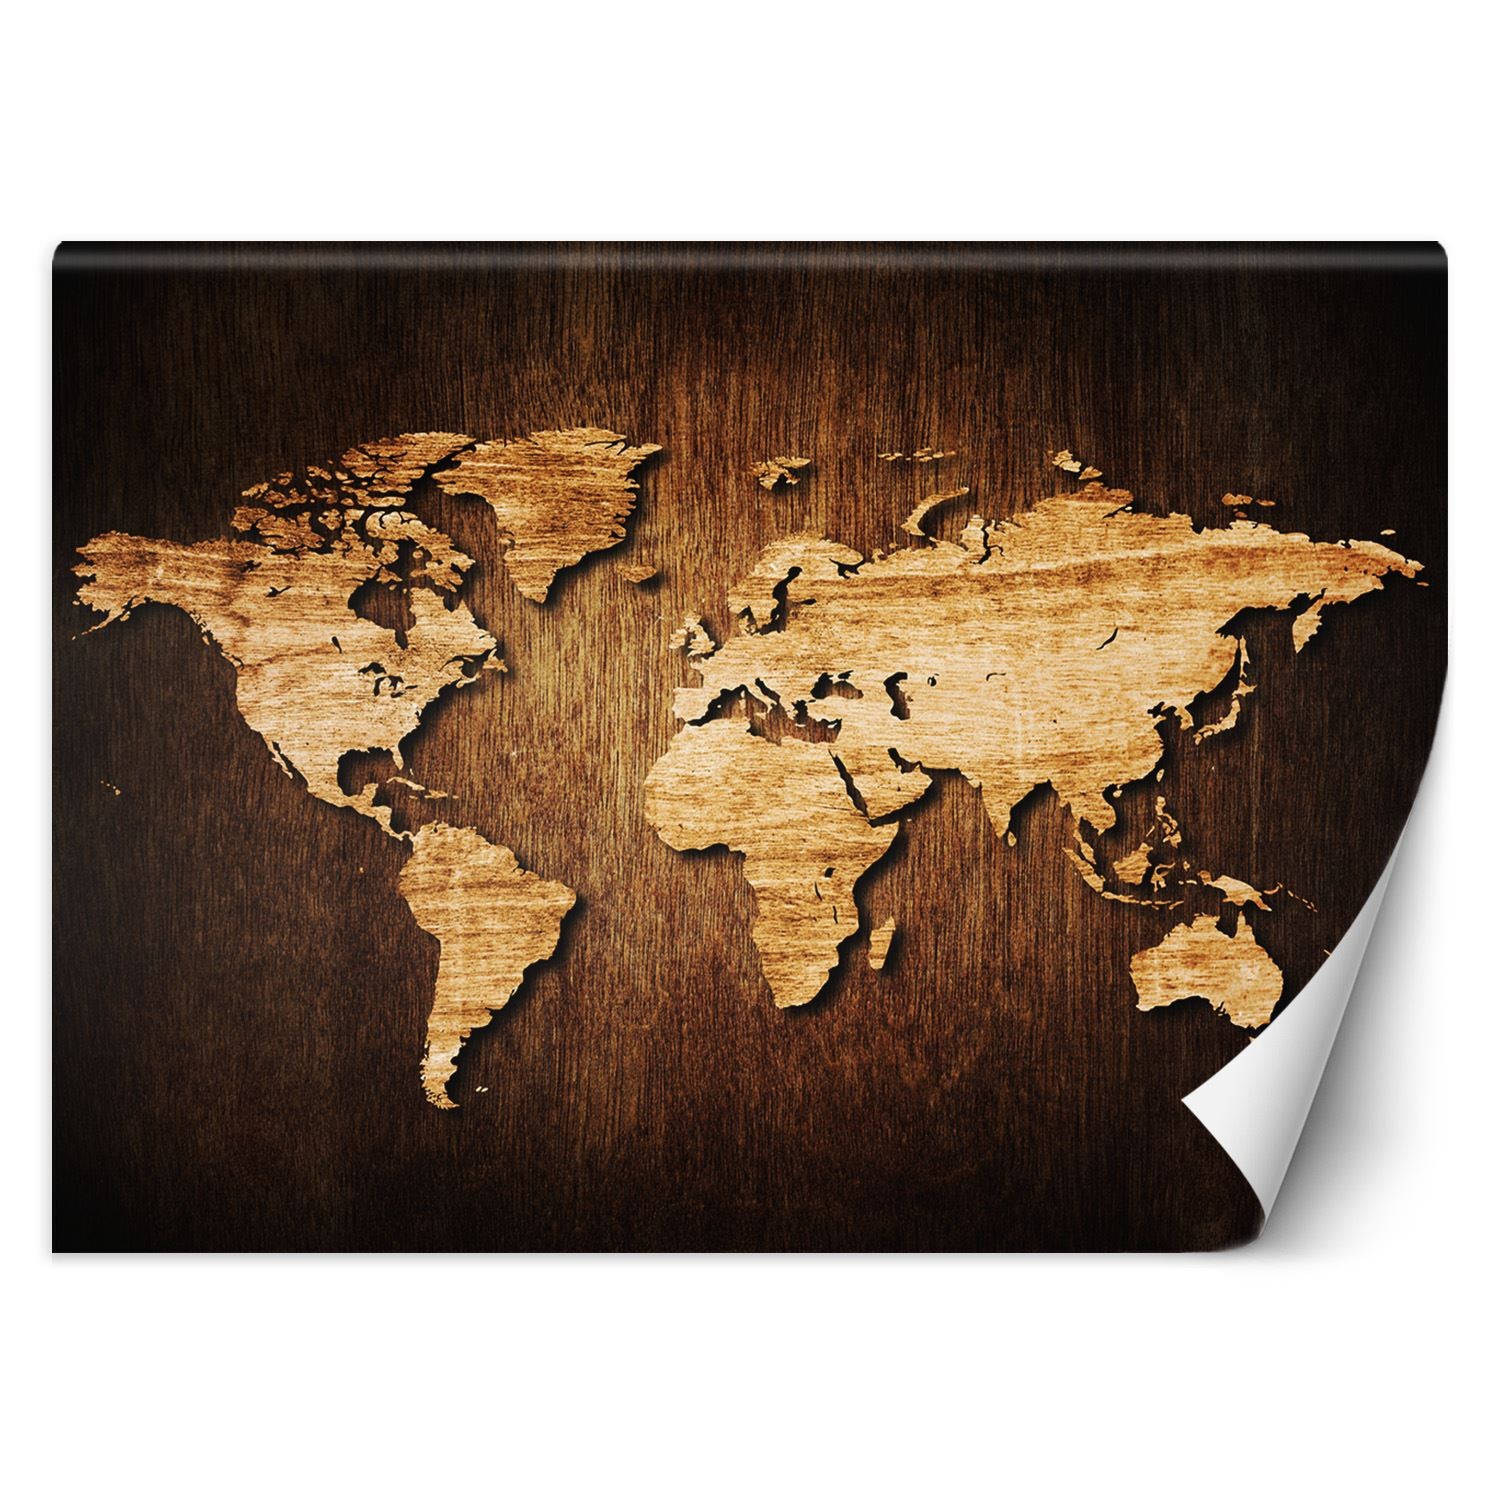 Trend24 – Behang – Wereldkaart – Behangpapier – Wereldkaart Wanddecoratie – Behang Woonkamer – 400x280x2 cm – Incl. behanglijm